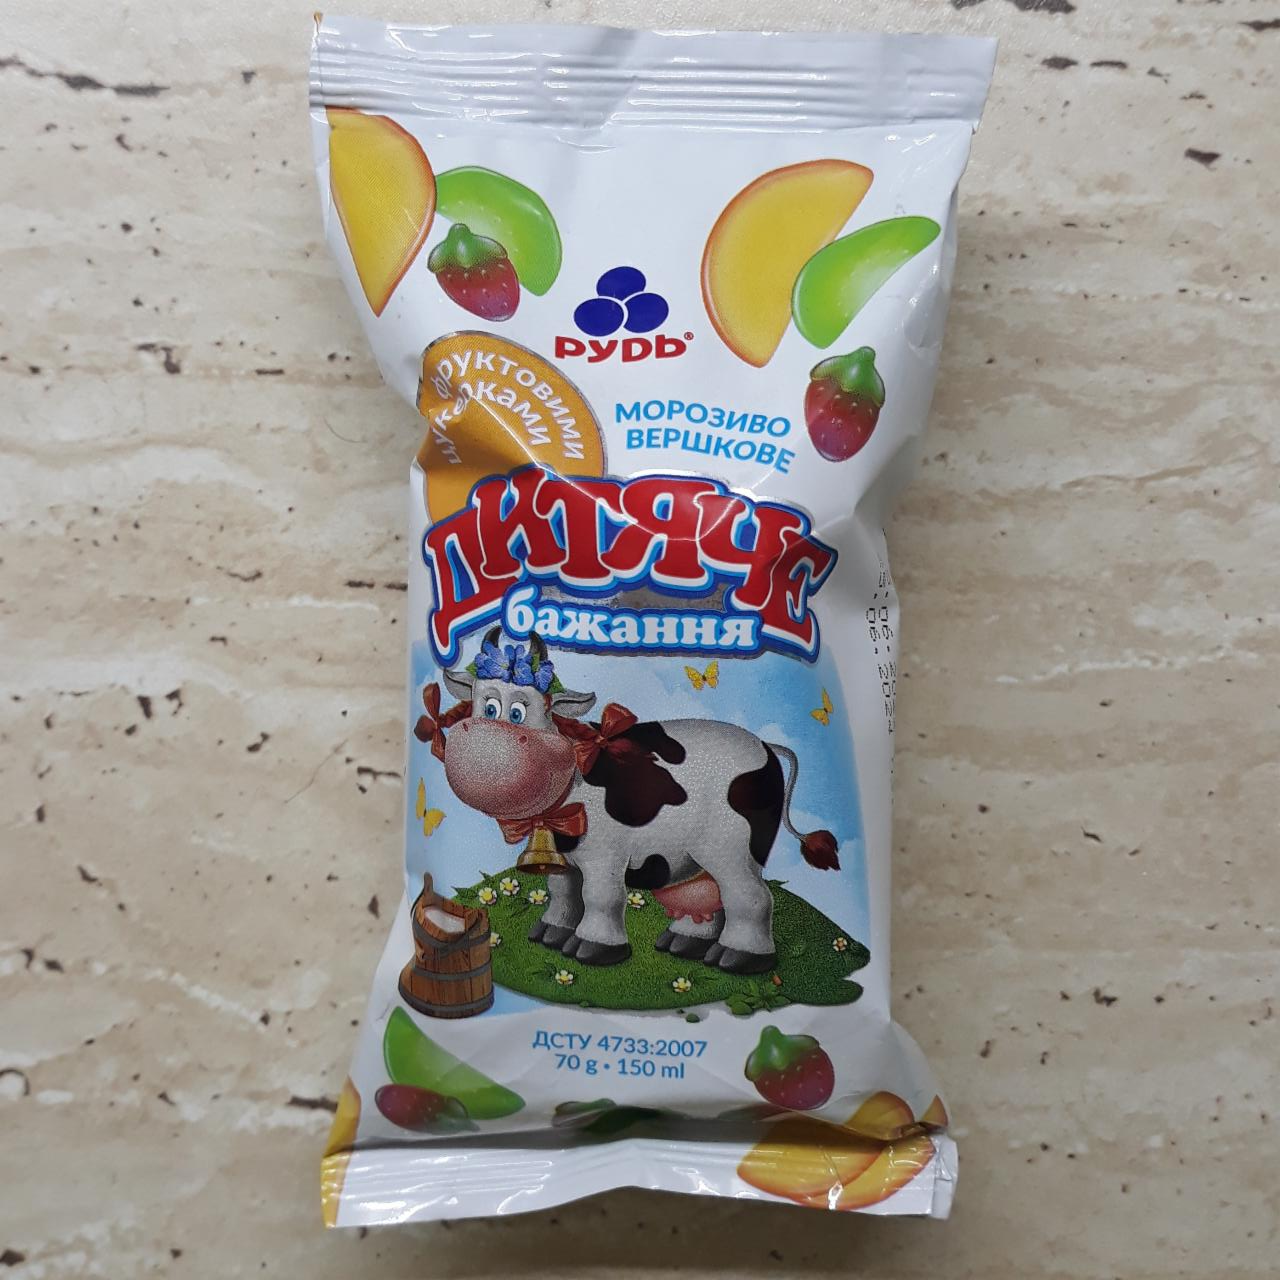 Фото - Мороженое с фруктовыми конфетами Детское желание Рудь